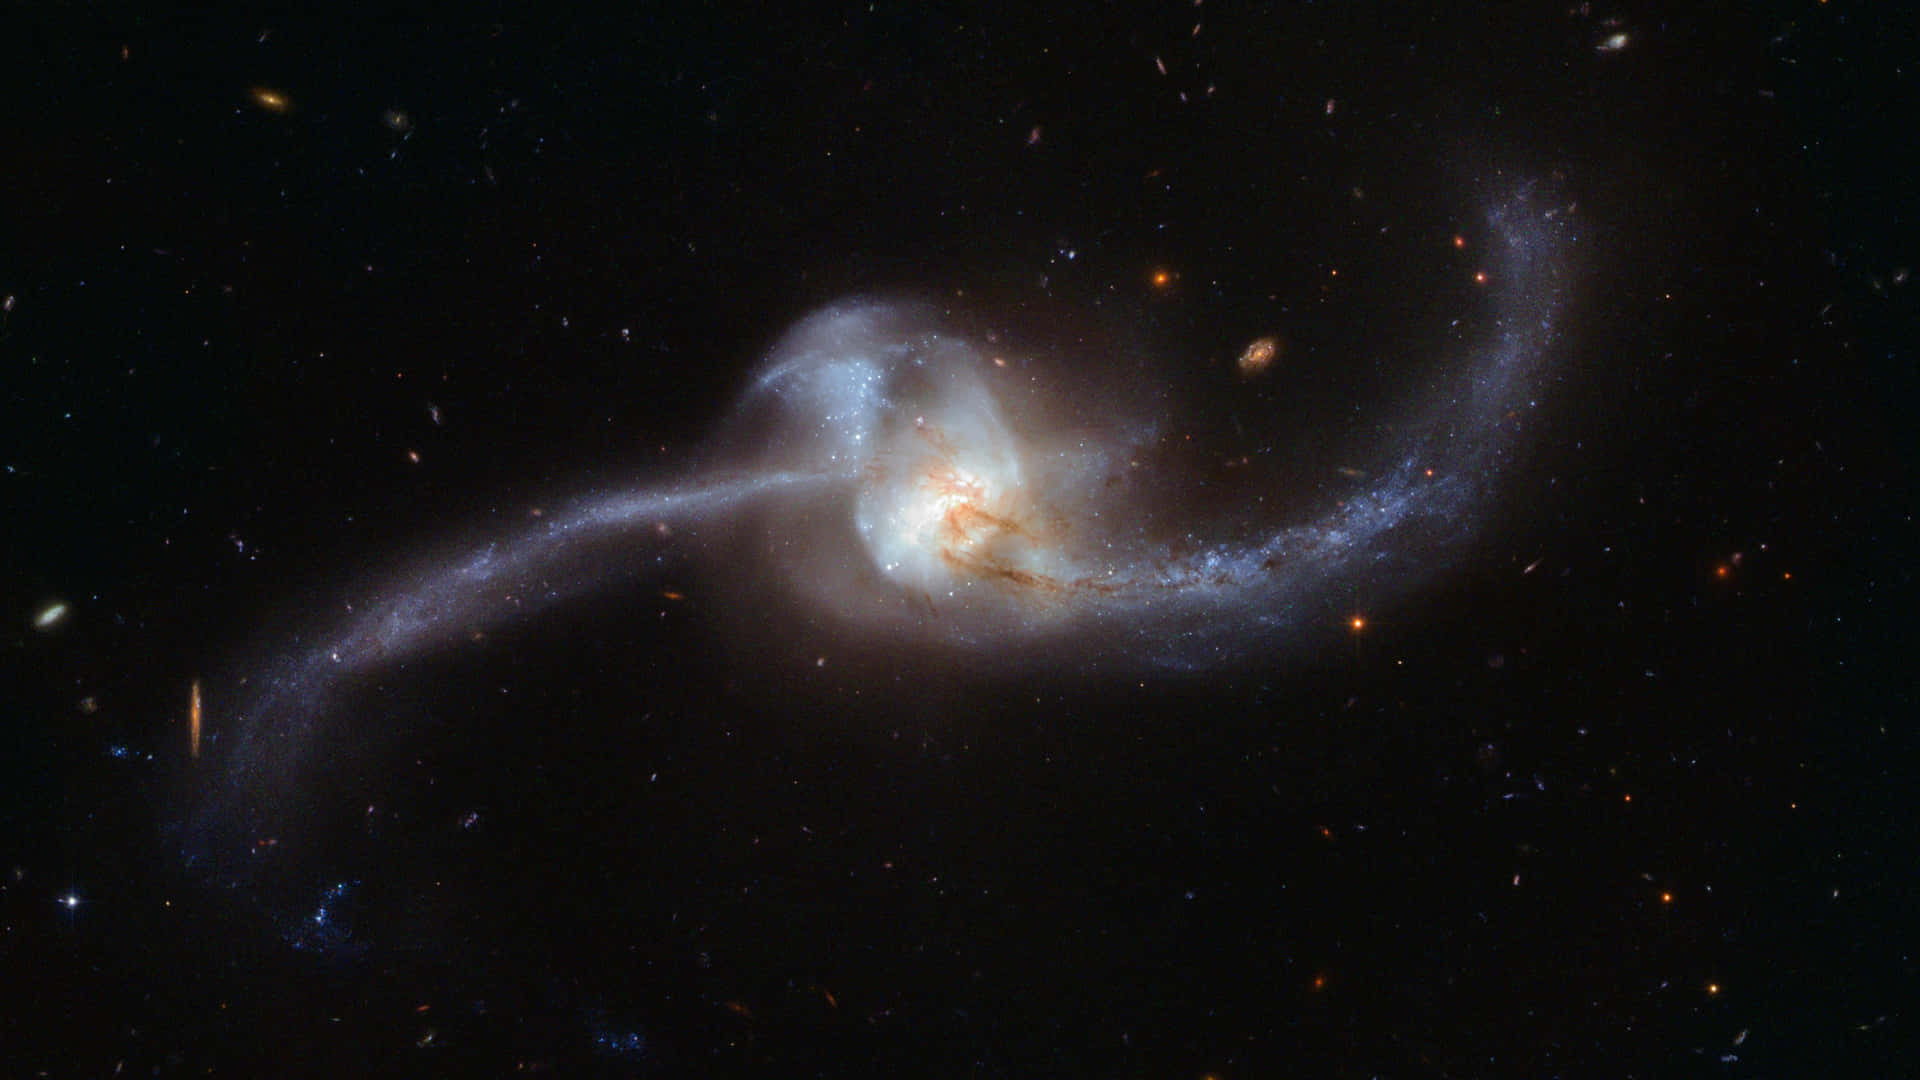 Unaimagen Increíble De Ngc 1491 Capturada Por El Telescopio Hubble. Fondo de pantalla